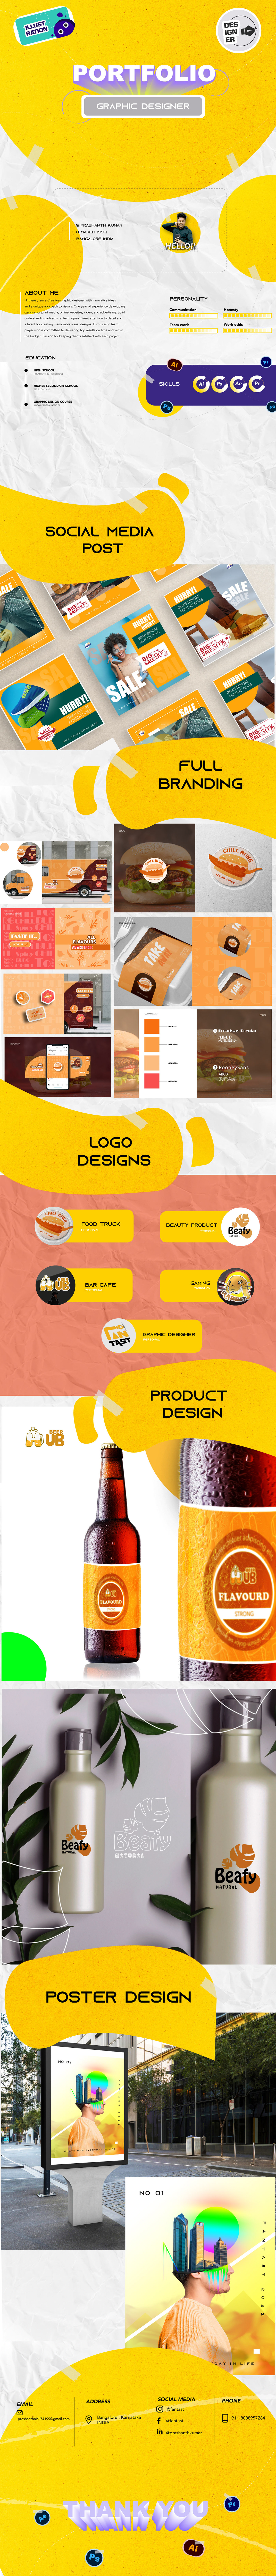 designer graphic design  graphic portfolio identity modern portfolio Portfolio Design protfolio template